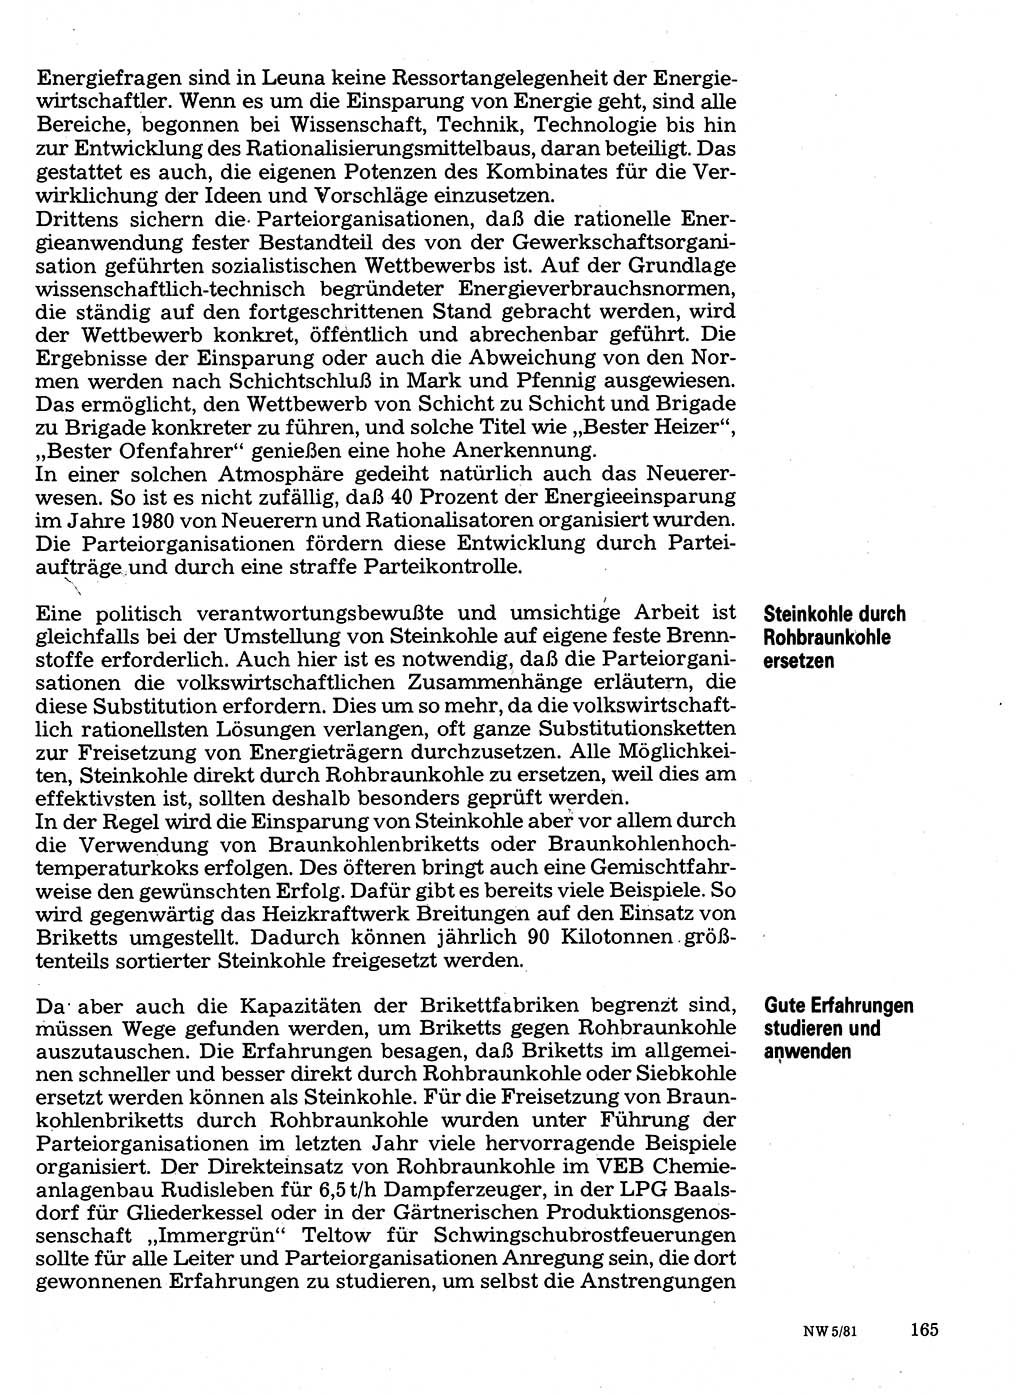 Neuer Weg (NW), Organ des Zentralkomitees (ZK) der SED (Sozialistische Einheitspartei Deutschlands) für Fragen des Parteilebens, 36. Jahrgang [Deutsche Demokratische Republik (DDR)] 1981, Seite 165 (NW ZK SED DDR 1981, S. 165)